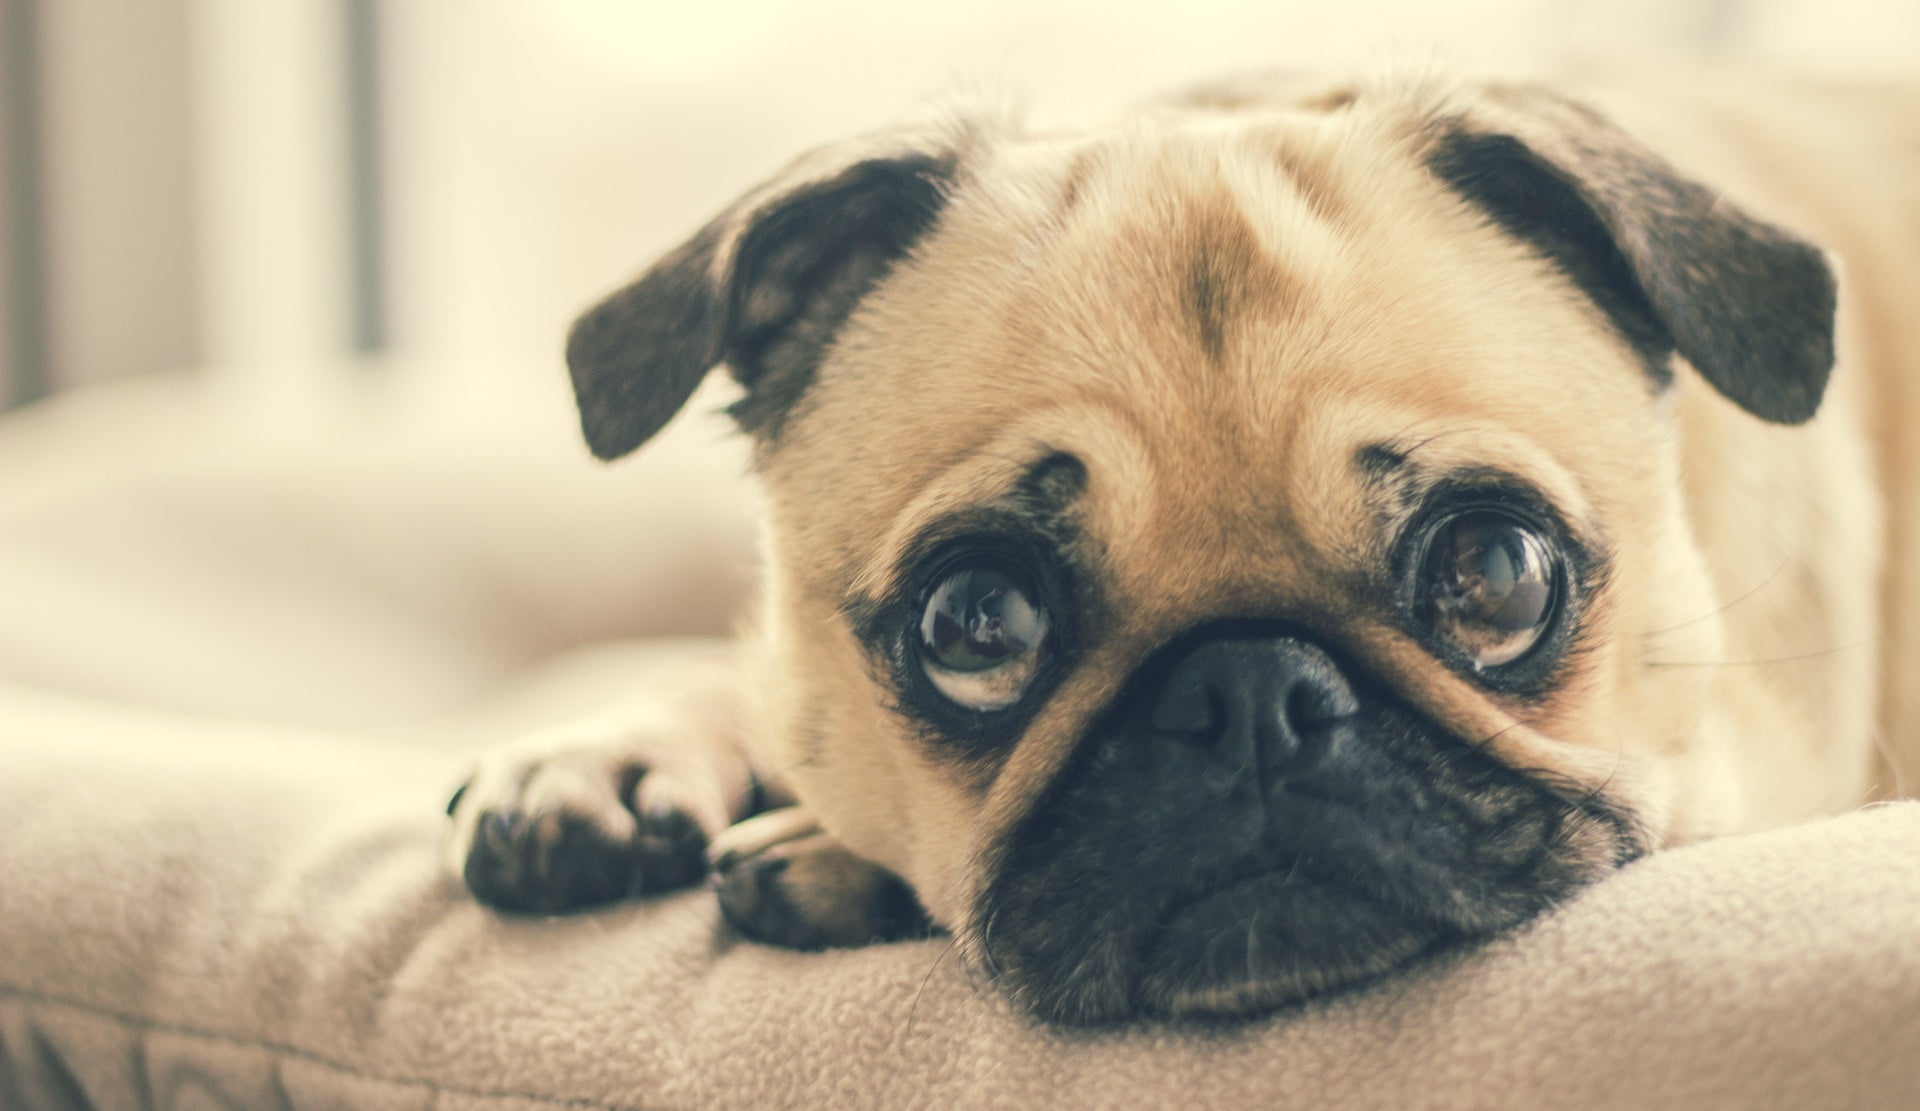 填問卷申請「寵物認證卡」 新北市幫貓狗寵物免費打疫苗、植晶片！ animal breed canine dog puppy cute eye